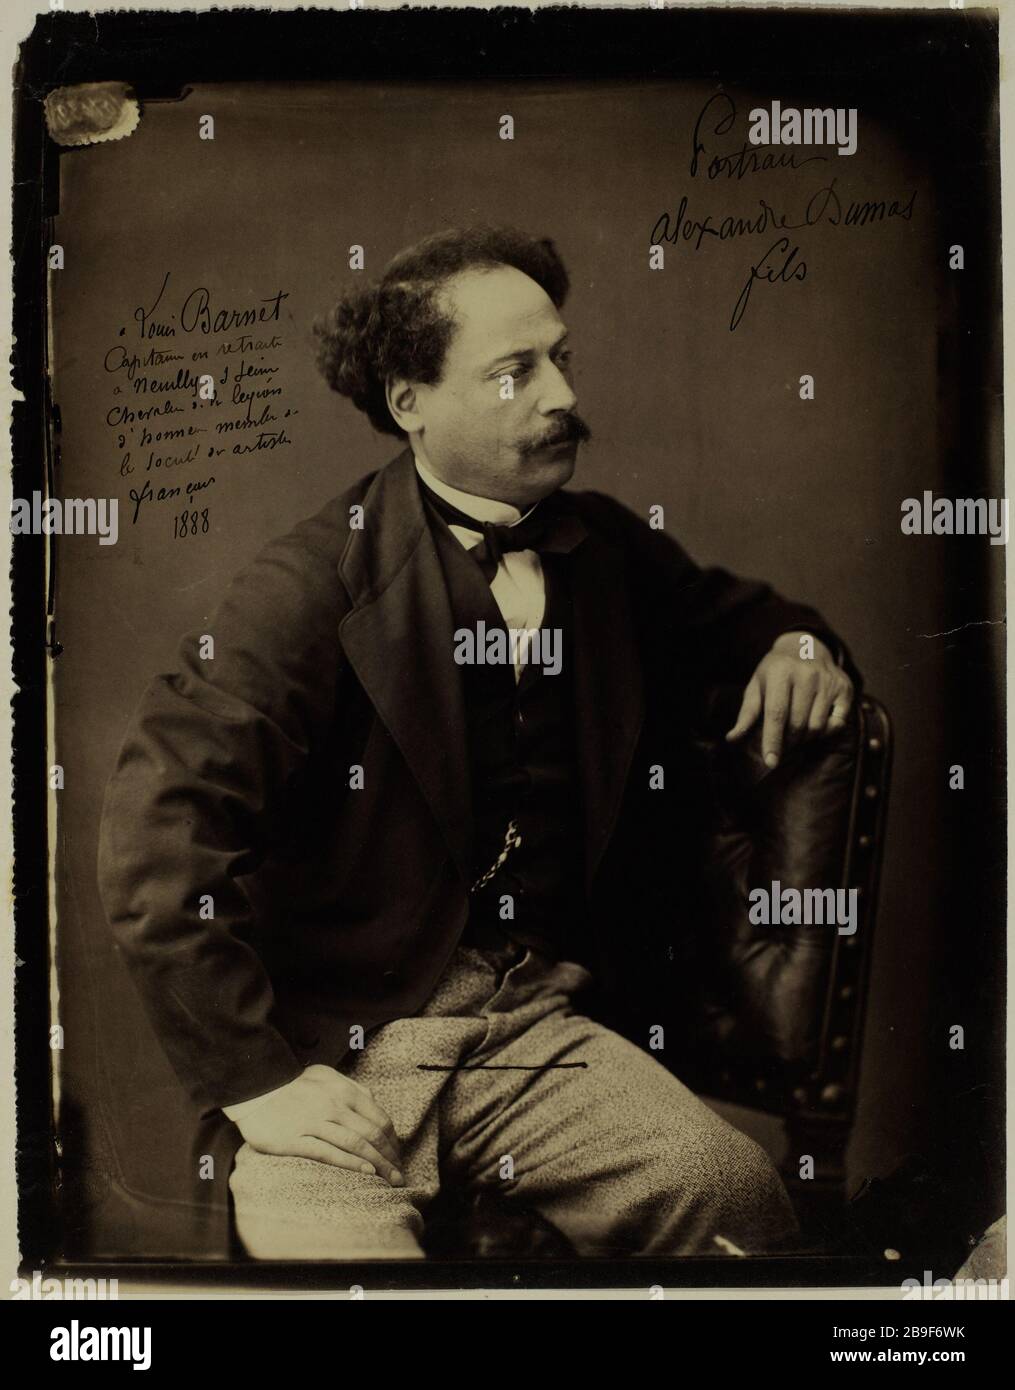 Alexandre Dumas, fils Alexandre Dumas fils (1824-1895), pleuvain et dramaturge français. 1878-1898. Photographie anonyme. Paris, musée Carnavalet. Banque D'Images